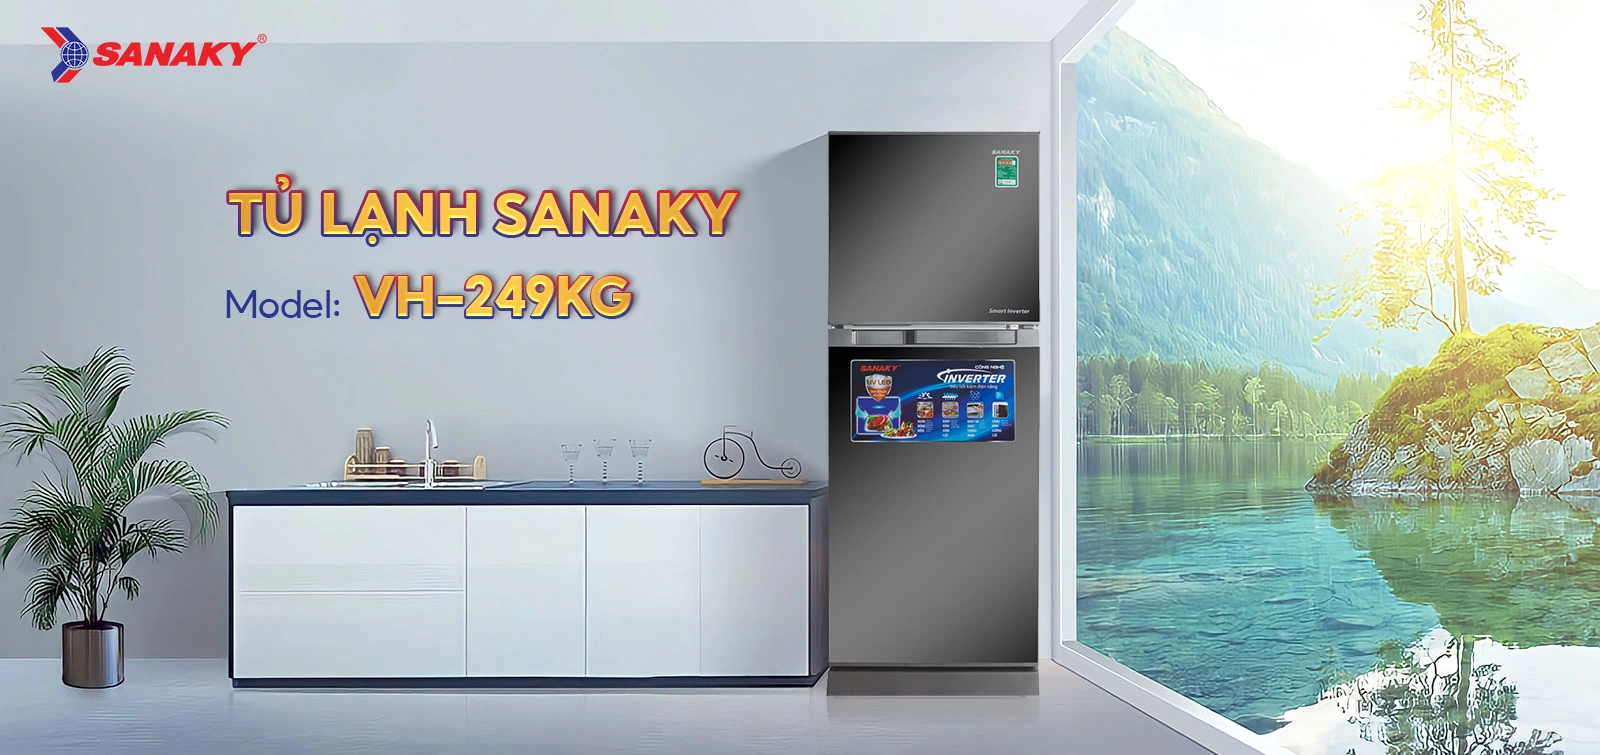 Tủ lạnh Sanaky VH-249KG